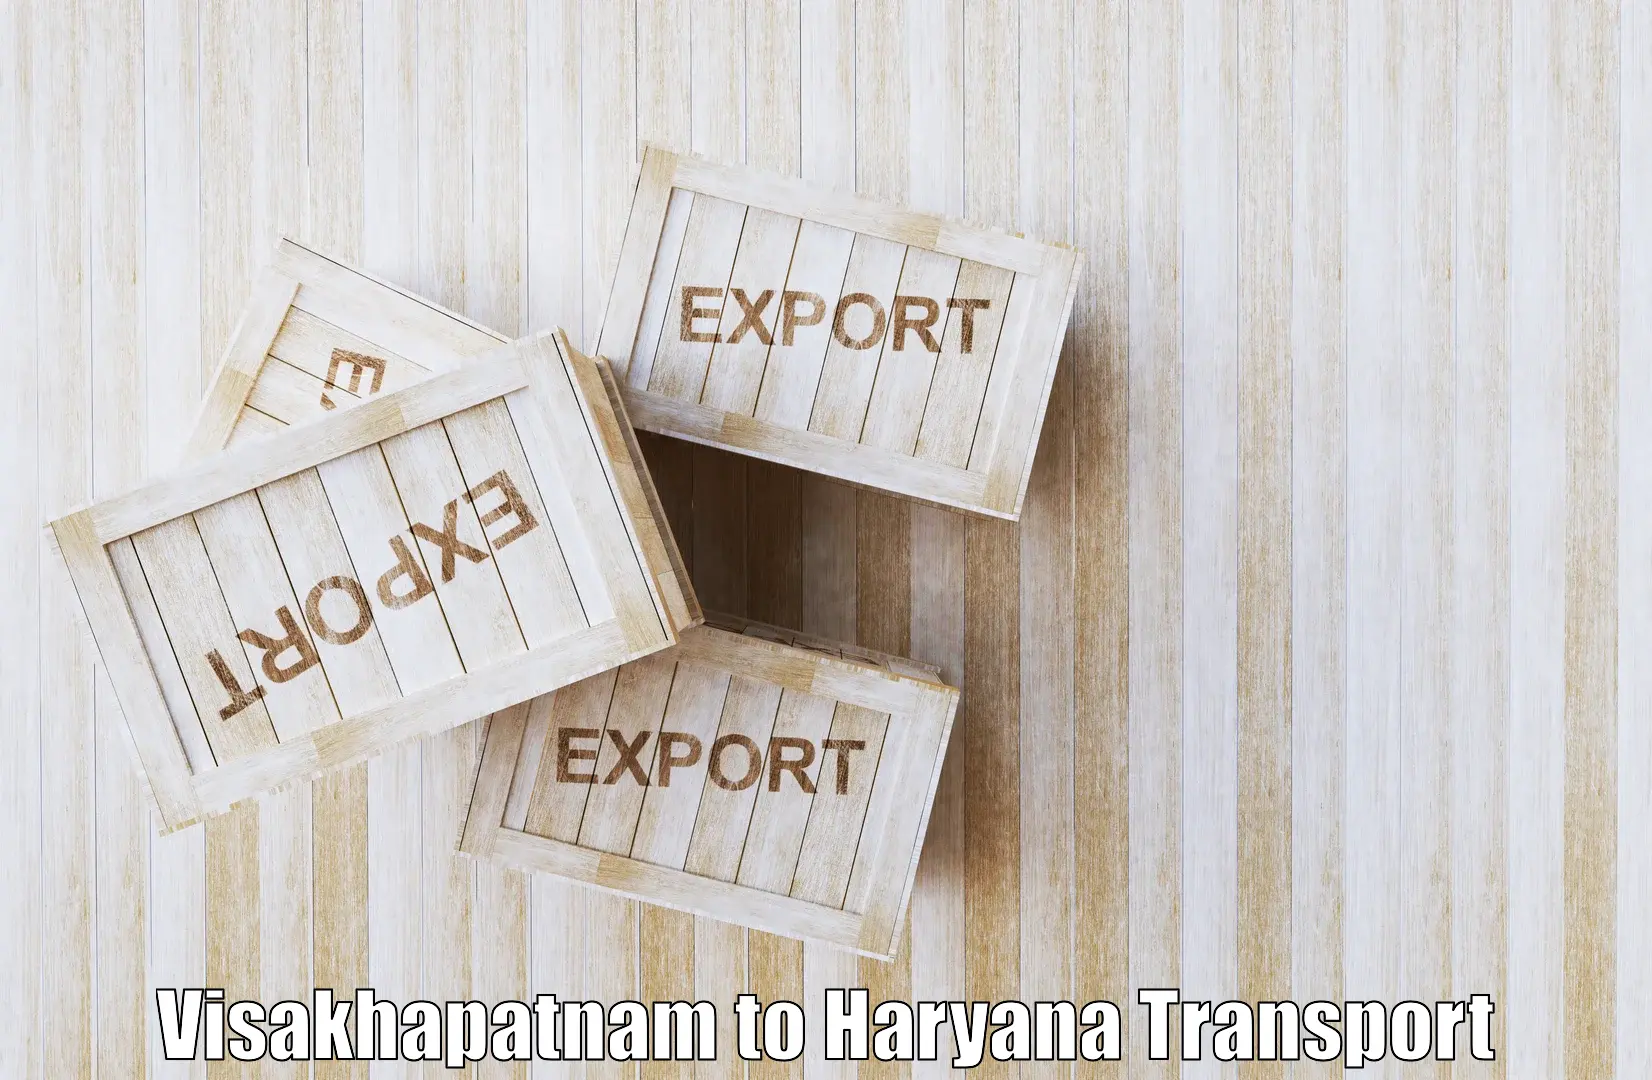 Transport in sharing Visakhapatnam to Panipat